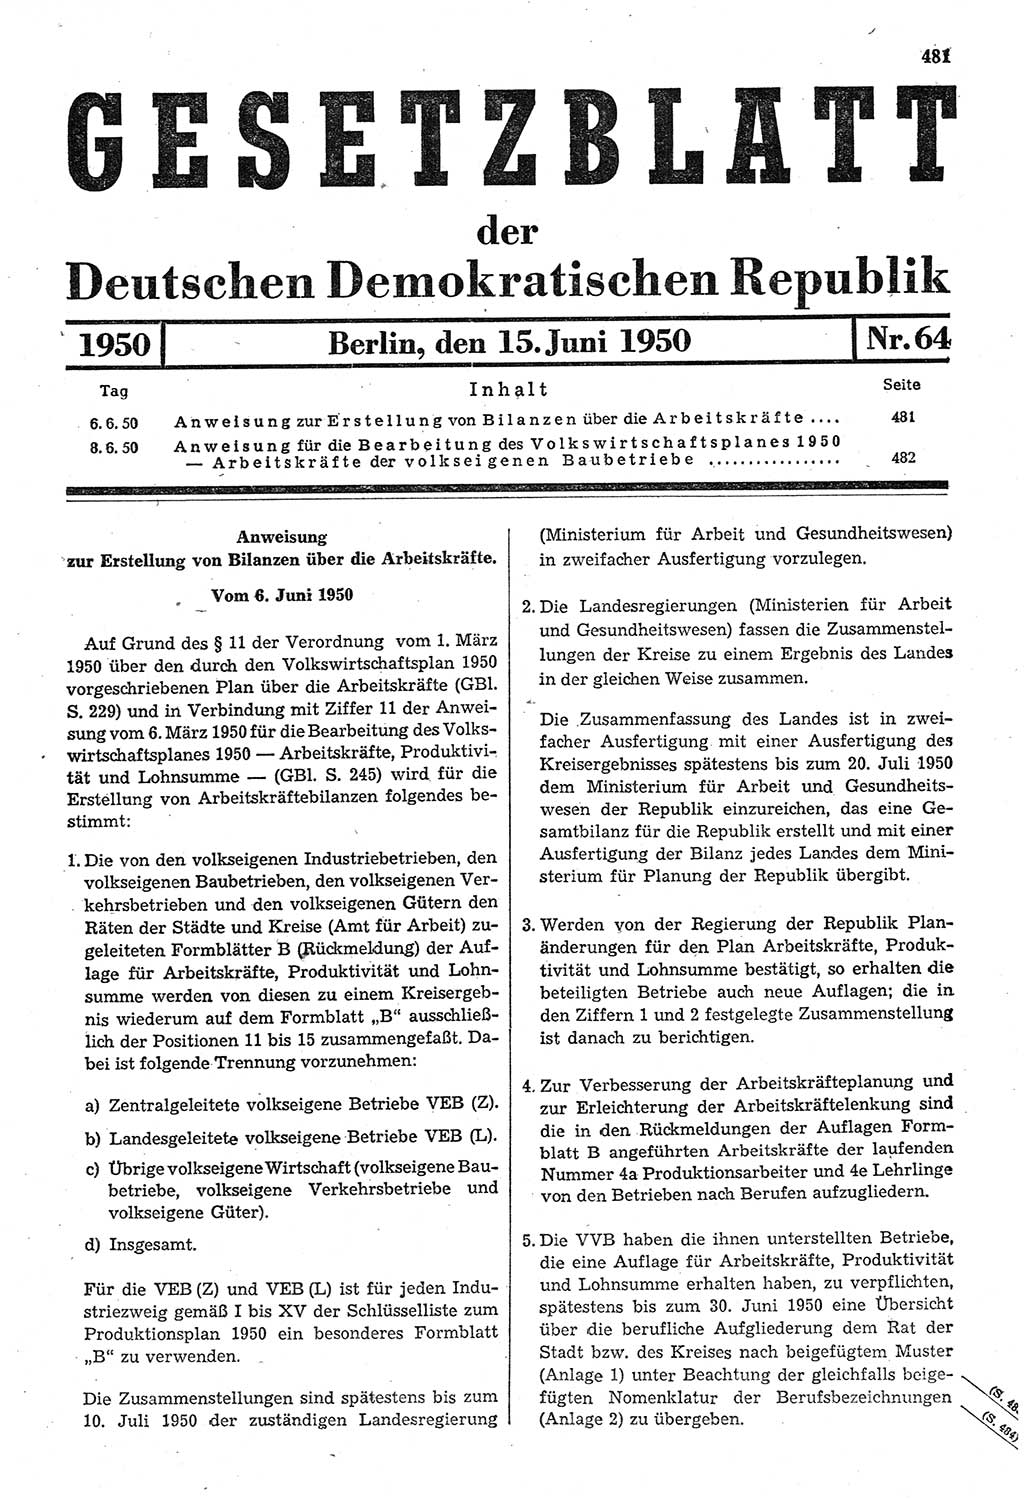 Gesetzblatt (GBl.) der Deutschen Demokratischen Republik (DDR) 1950, Seite 481 (GBl. DDR 1950, S. 481)